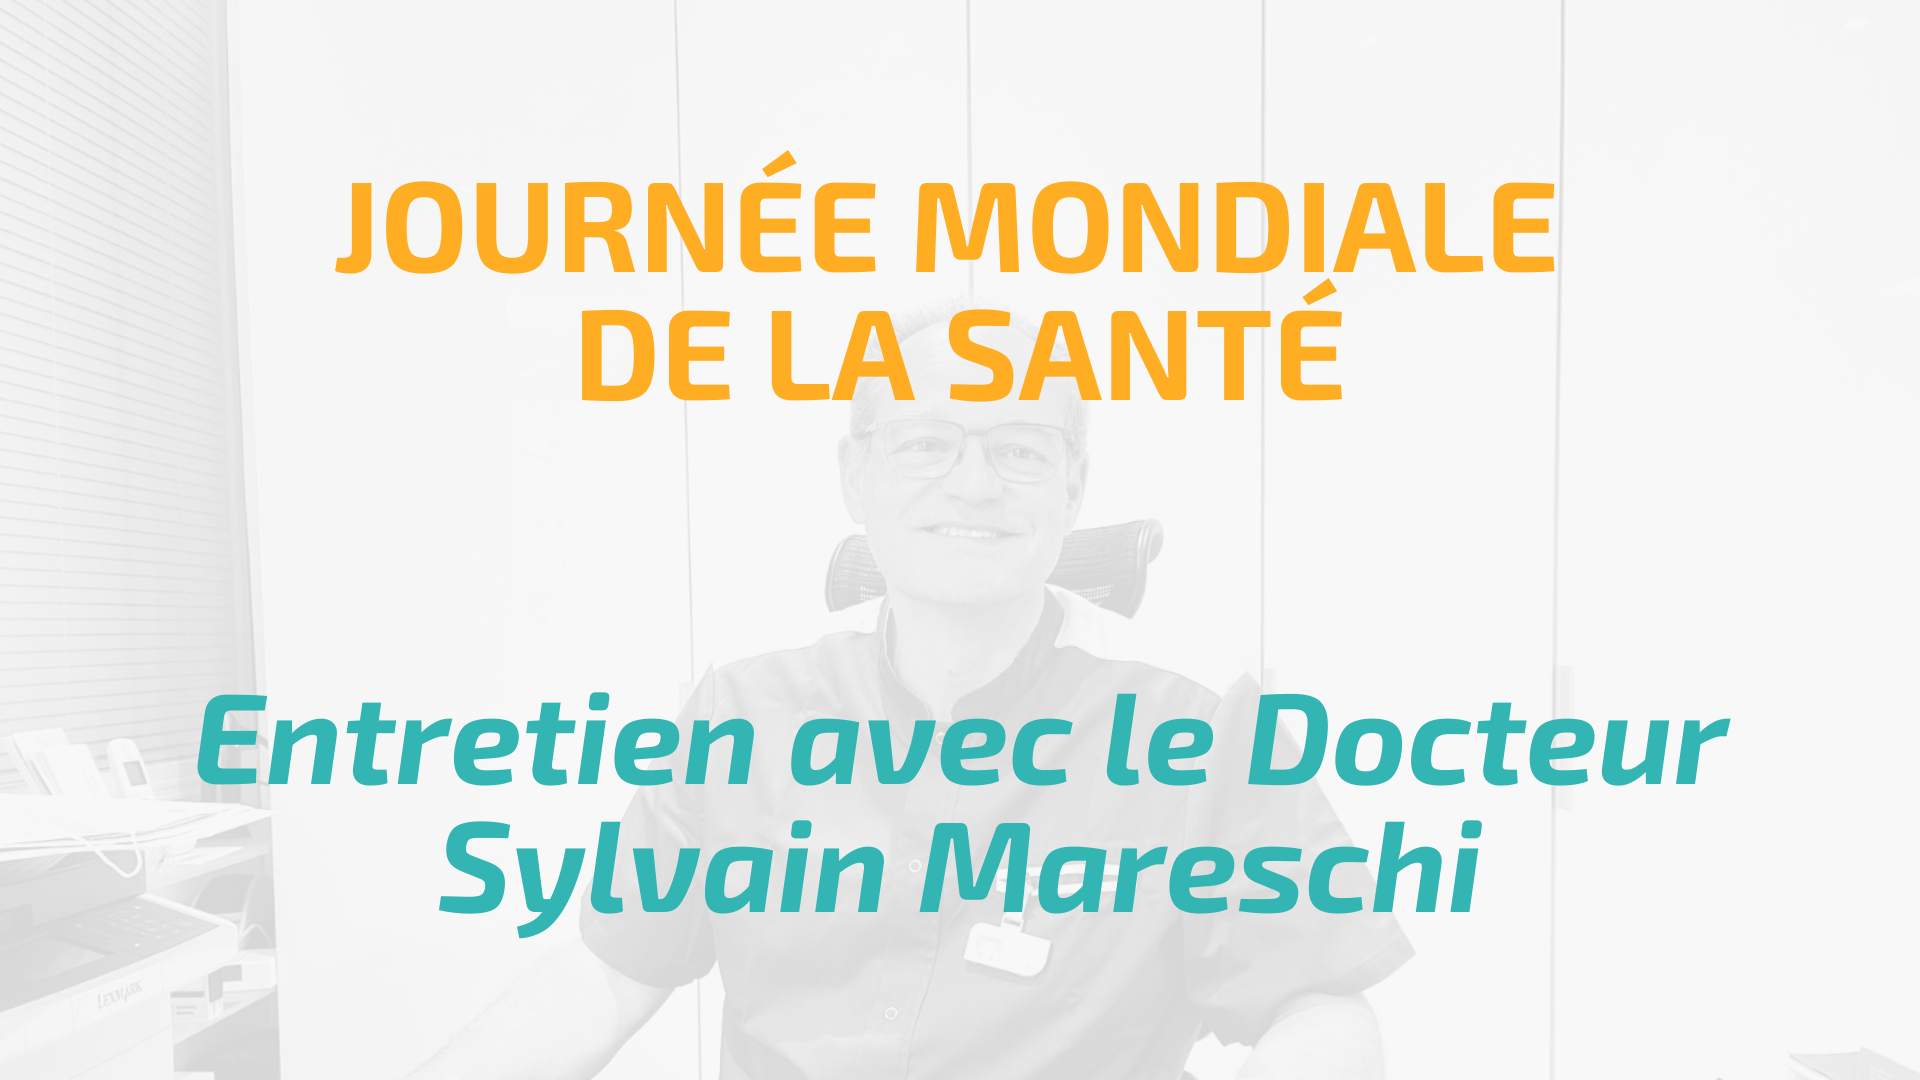 JOURNEE MONDIALE DE LA SANTE 2021 : ENTRETIEN AVEC LE DOCTEUR SYLVAIN MARESCHI